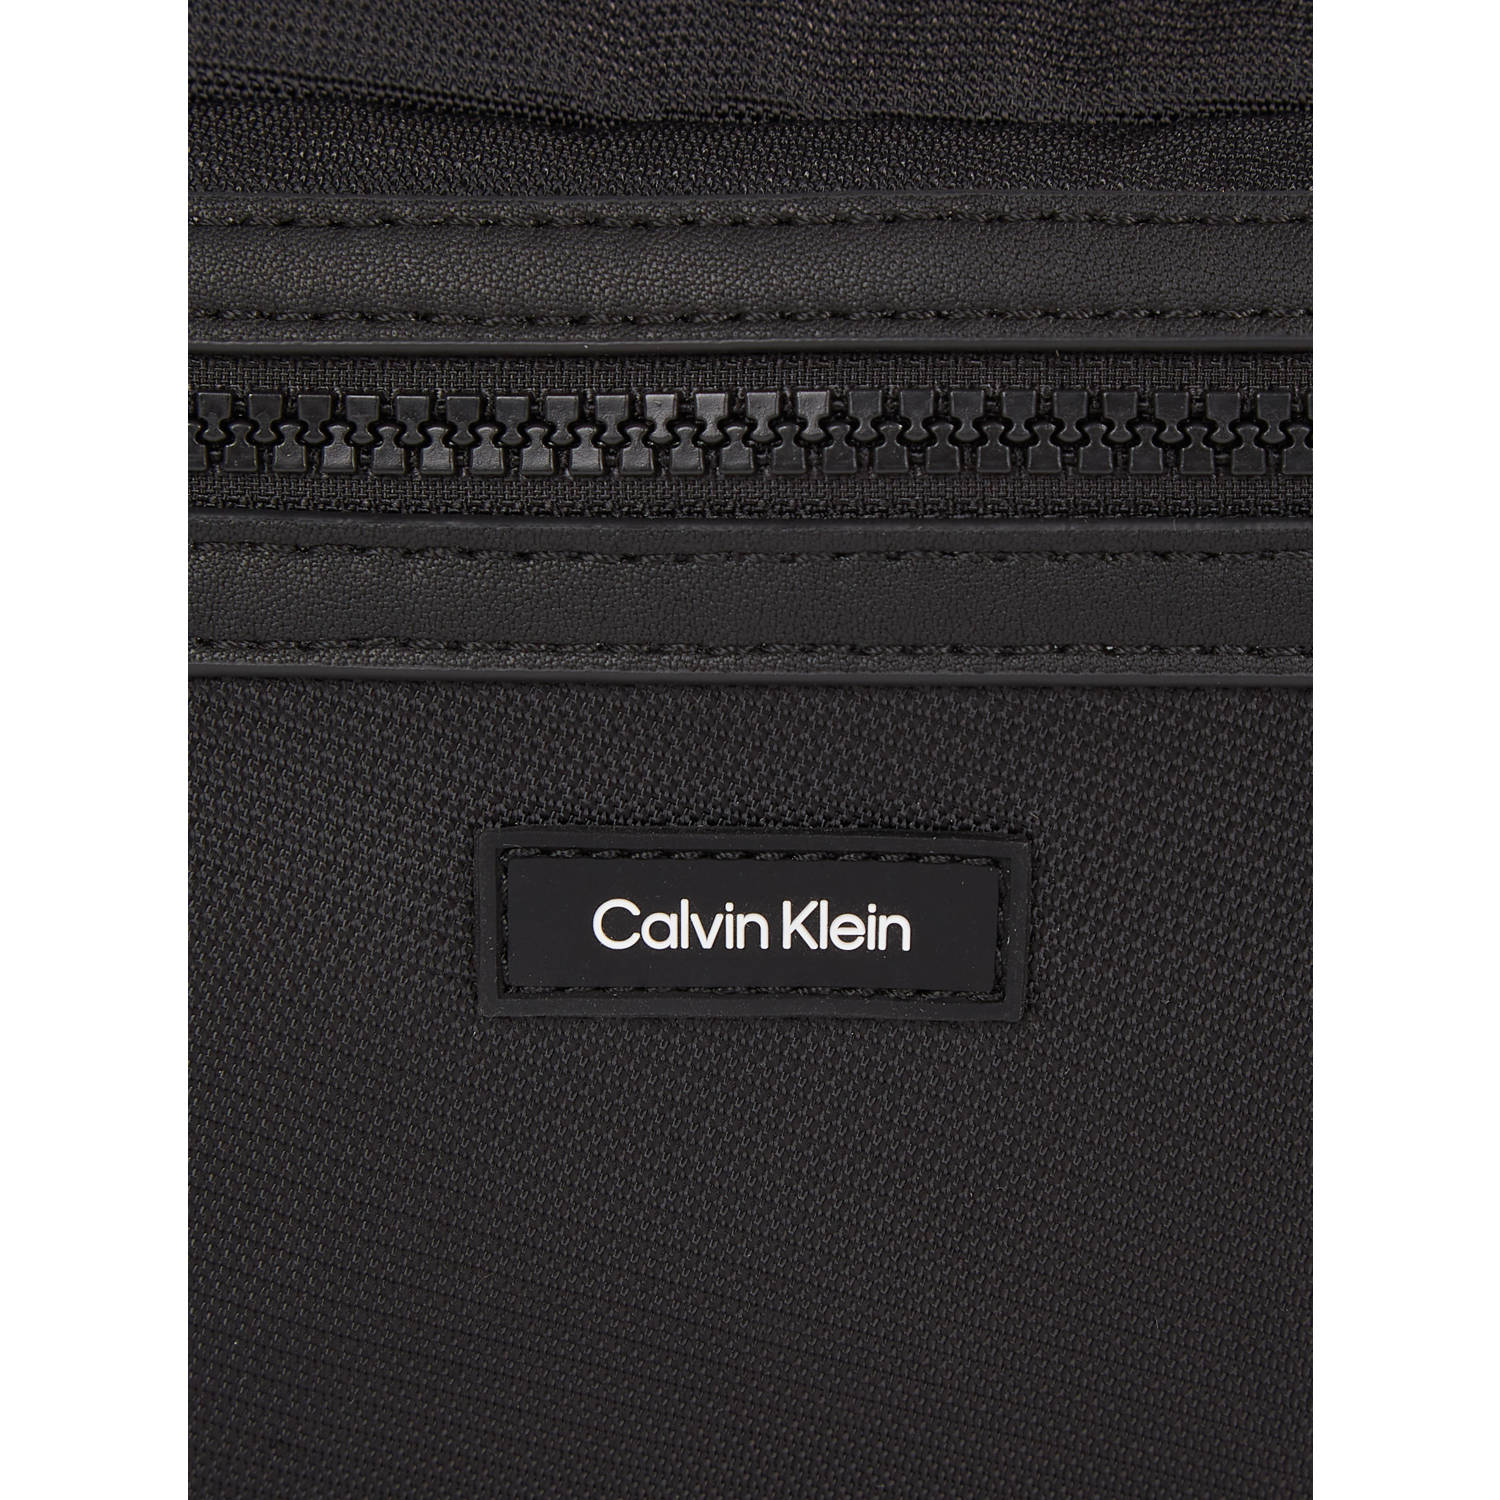 Calvin Klein schoudertas CK Essential zwart